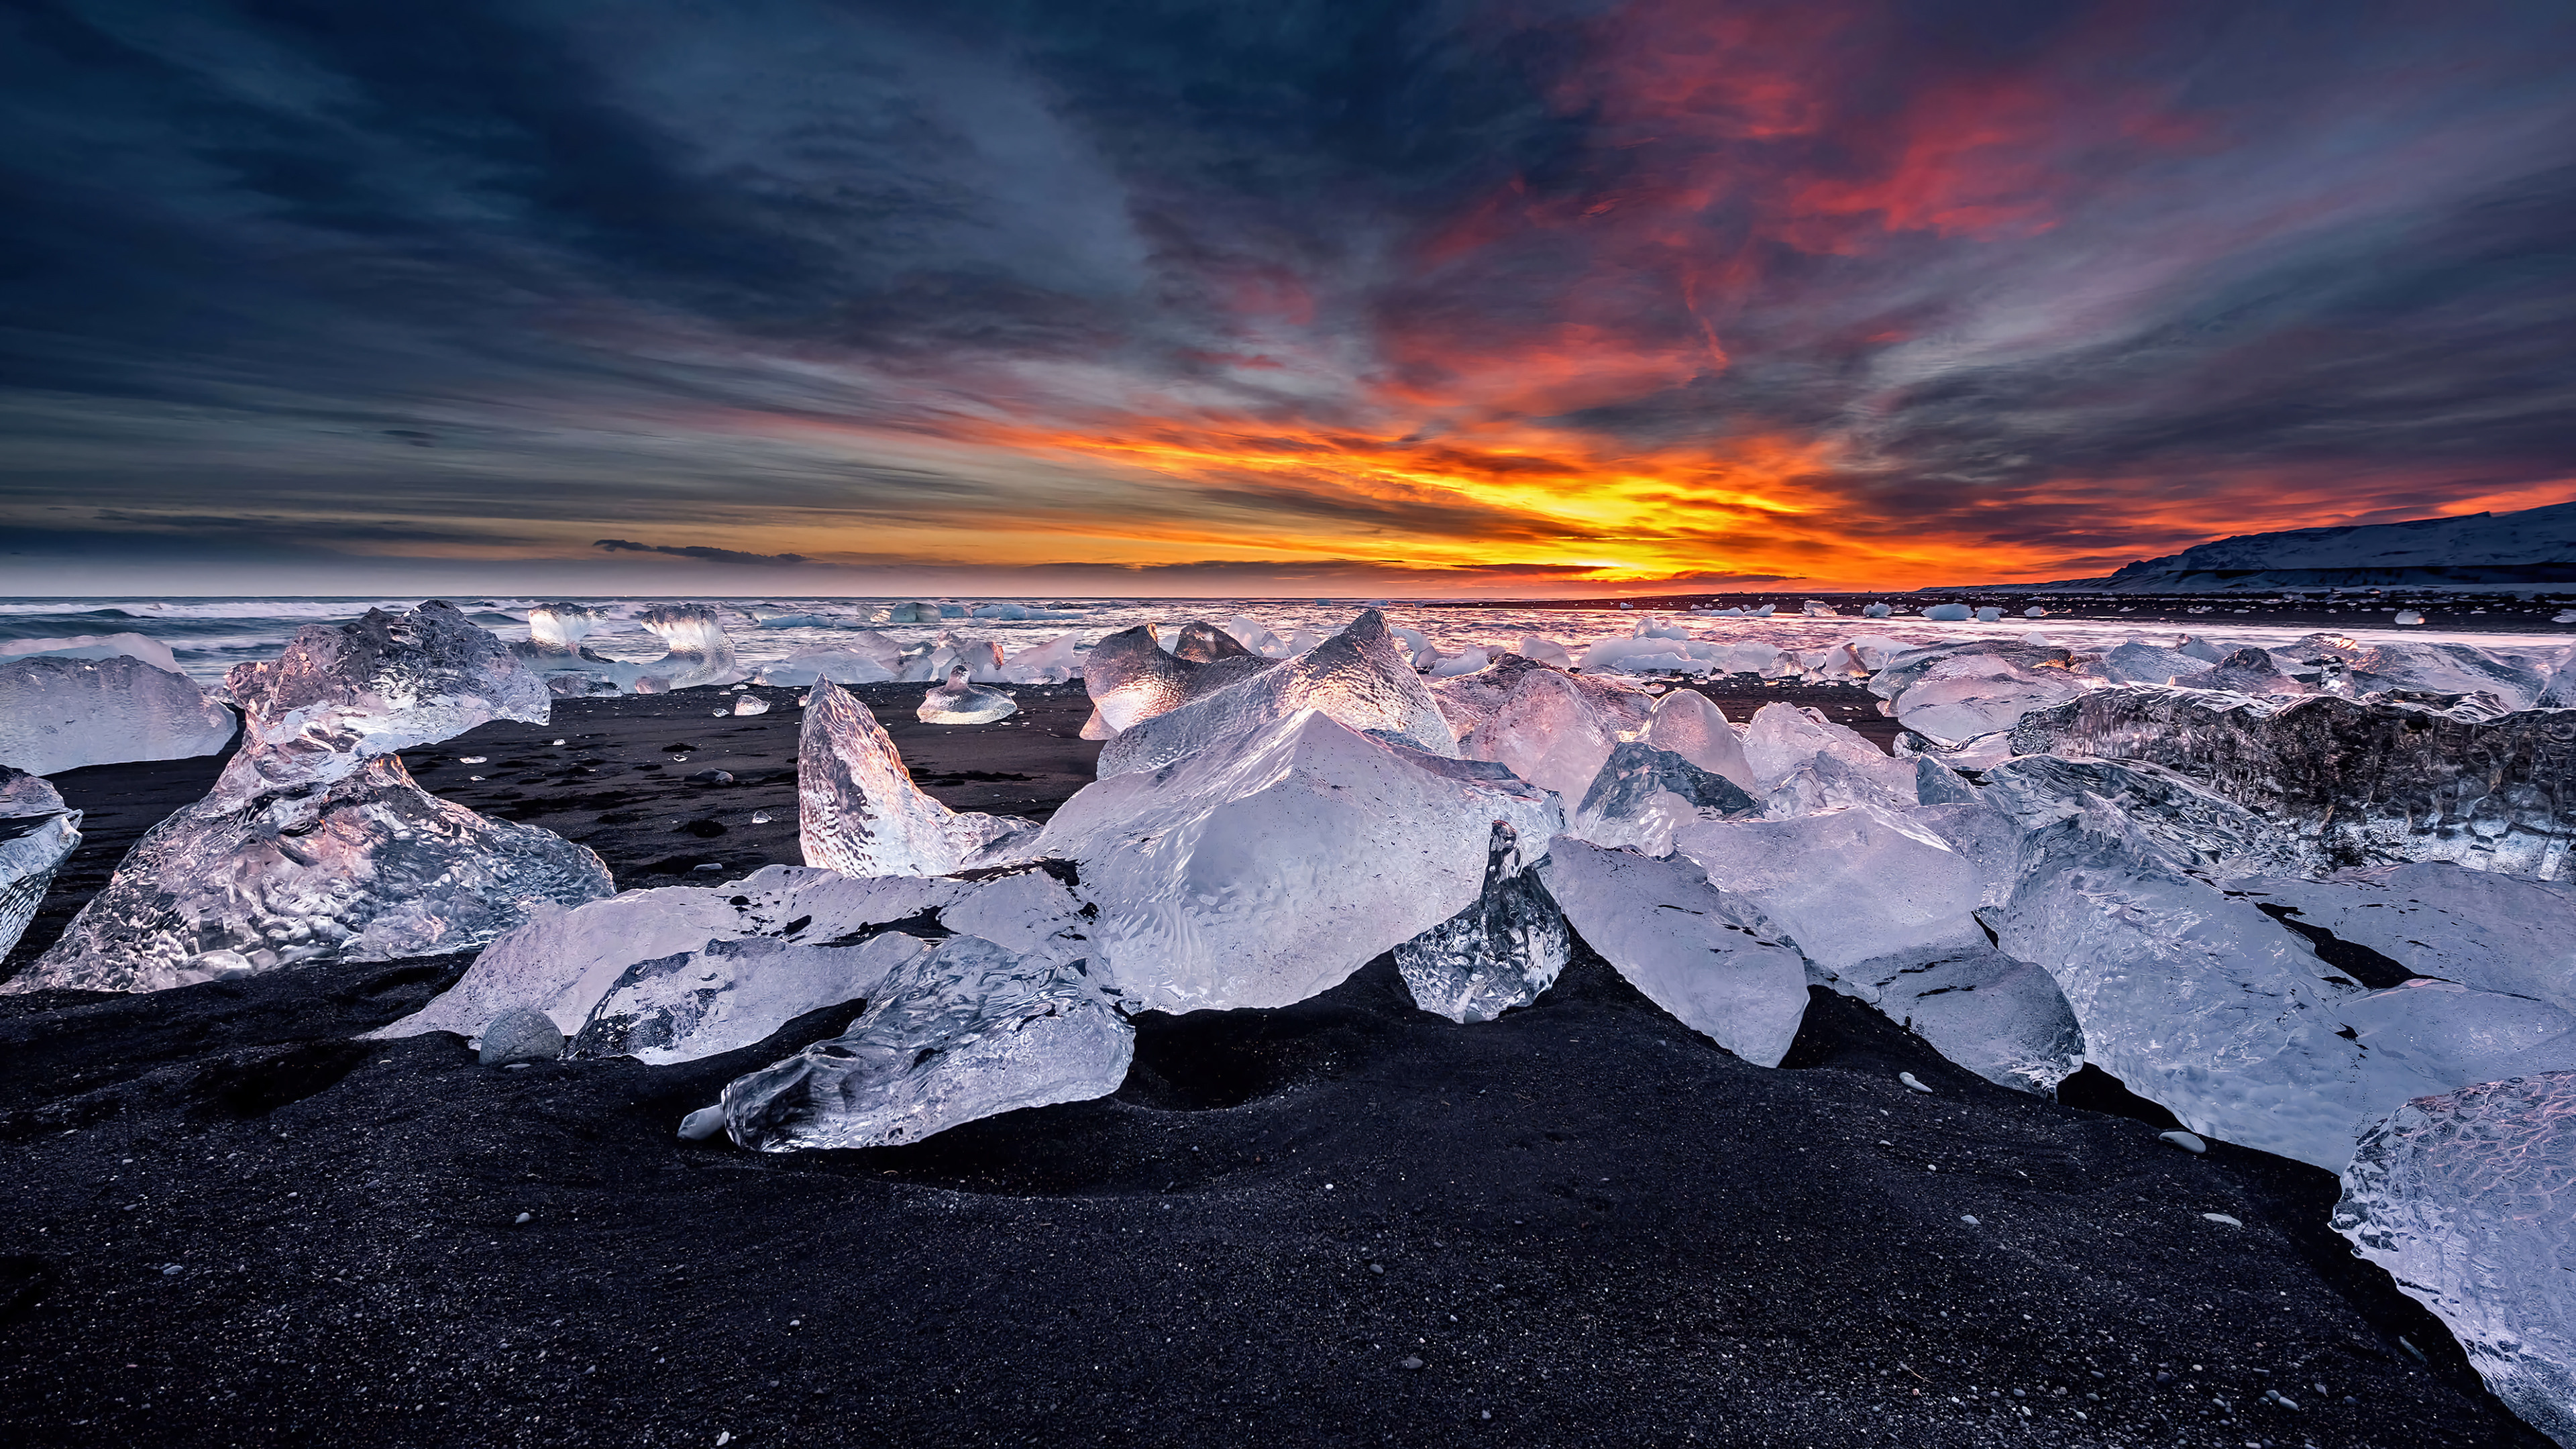 Ice on island wallpaper, Frozen wonderland, Majestic glaciers, Crystal clear waters, 3840x2160 4K Desktop